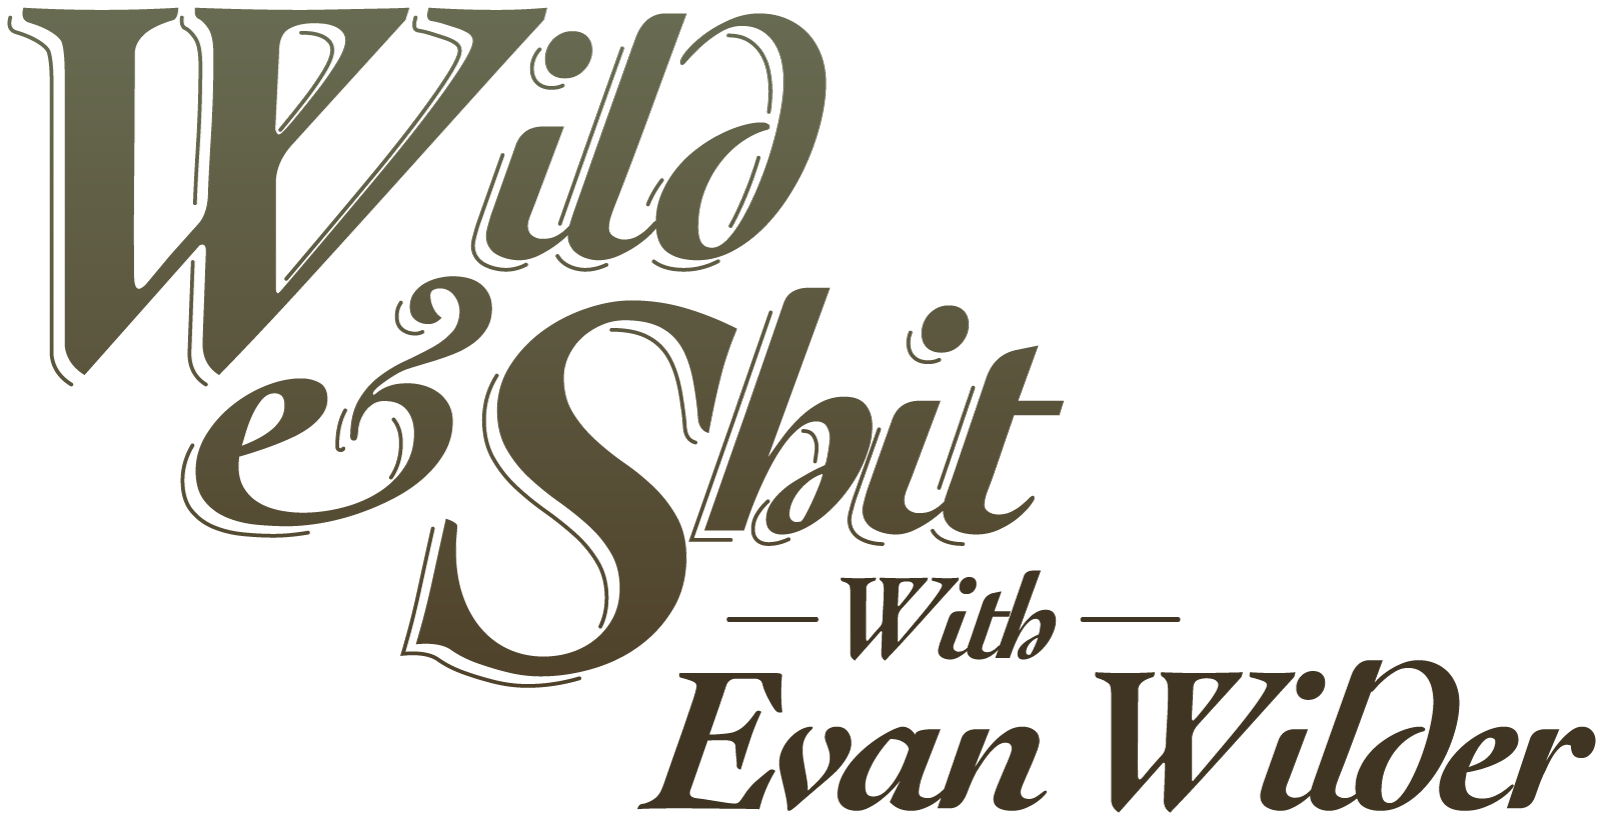 Wild & Shit with Evan Wilder